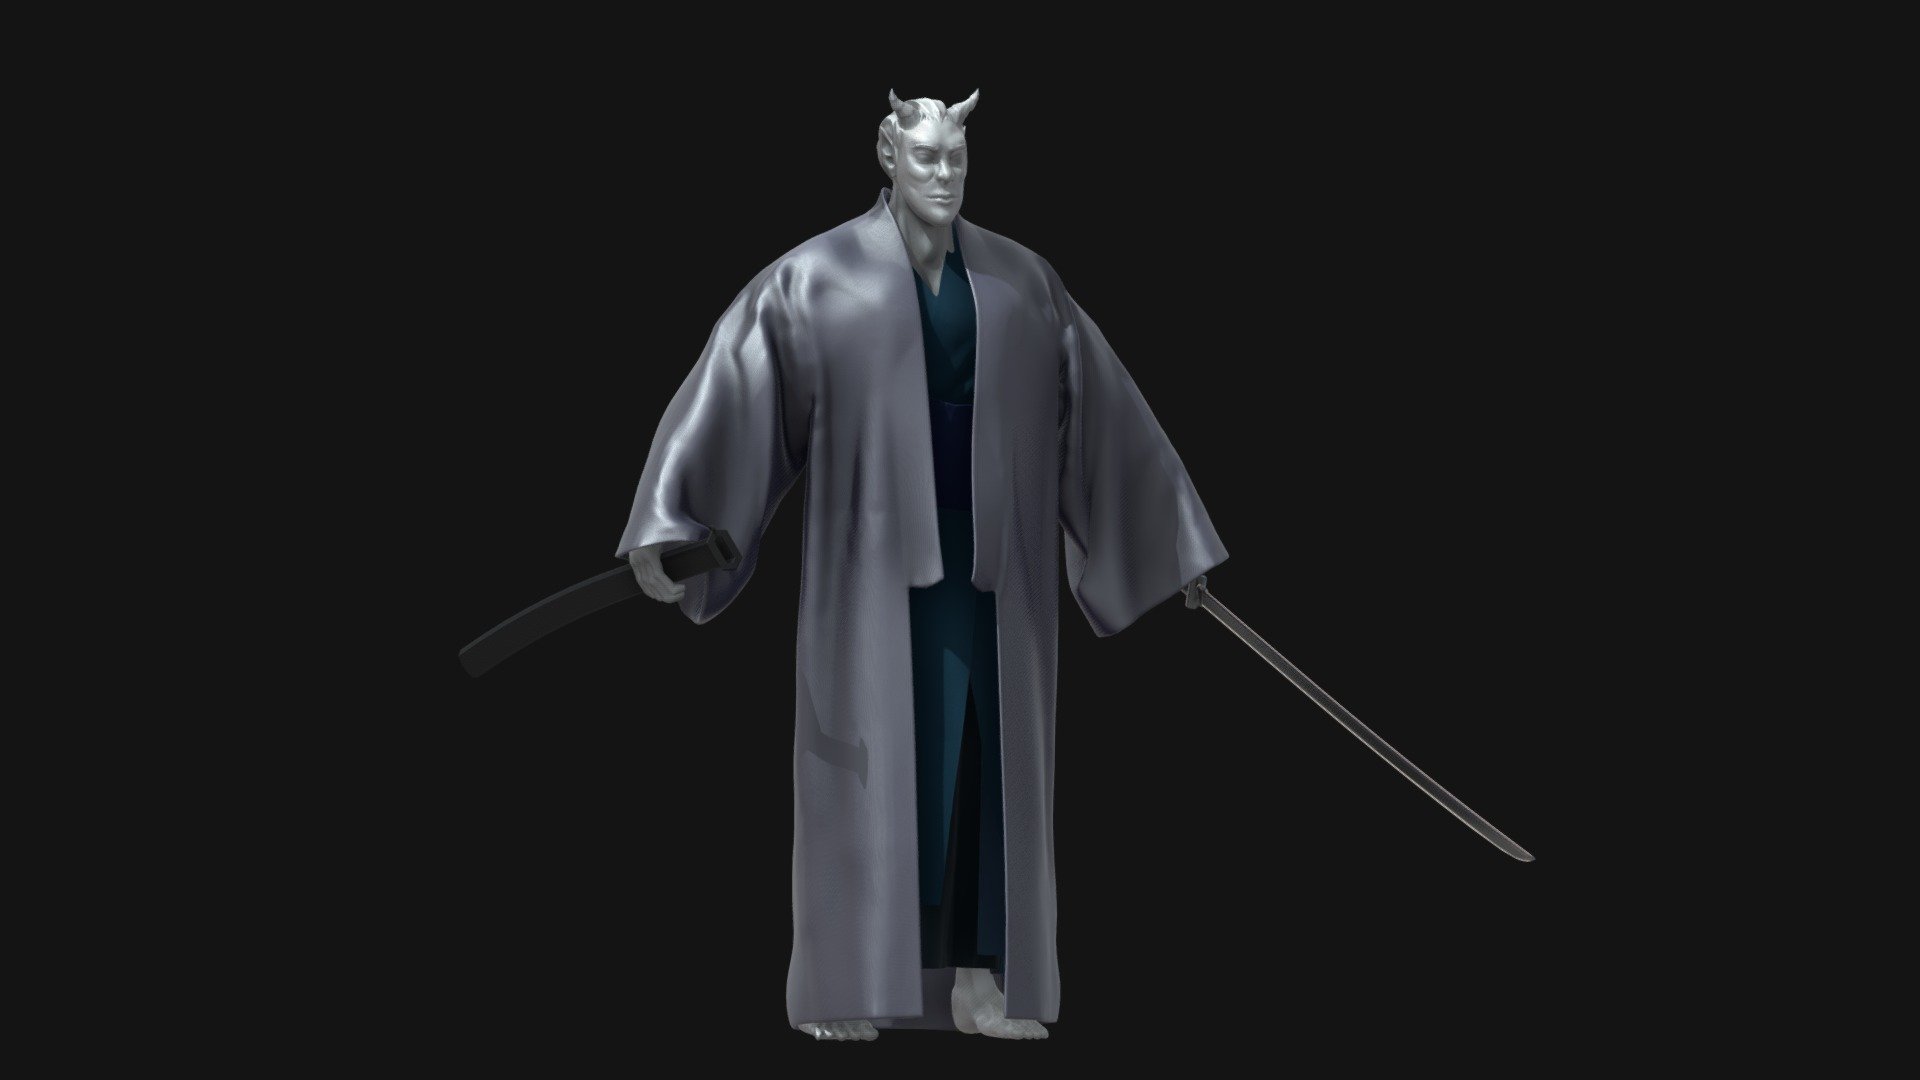 Samurai - Download Free 3D model by KarolinaP [3551643] - Sketchfab